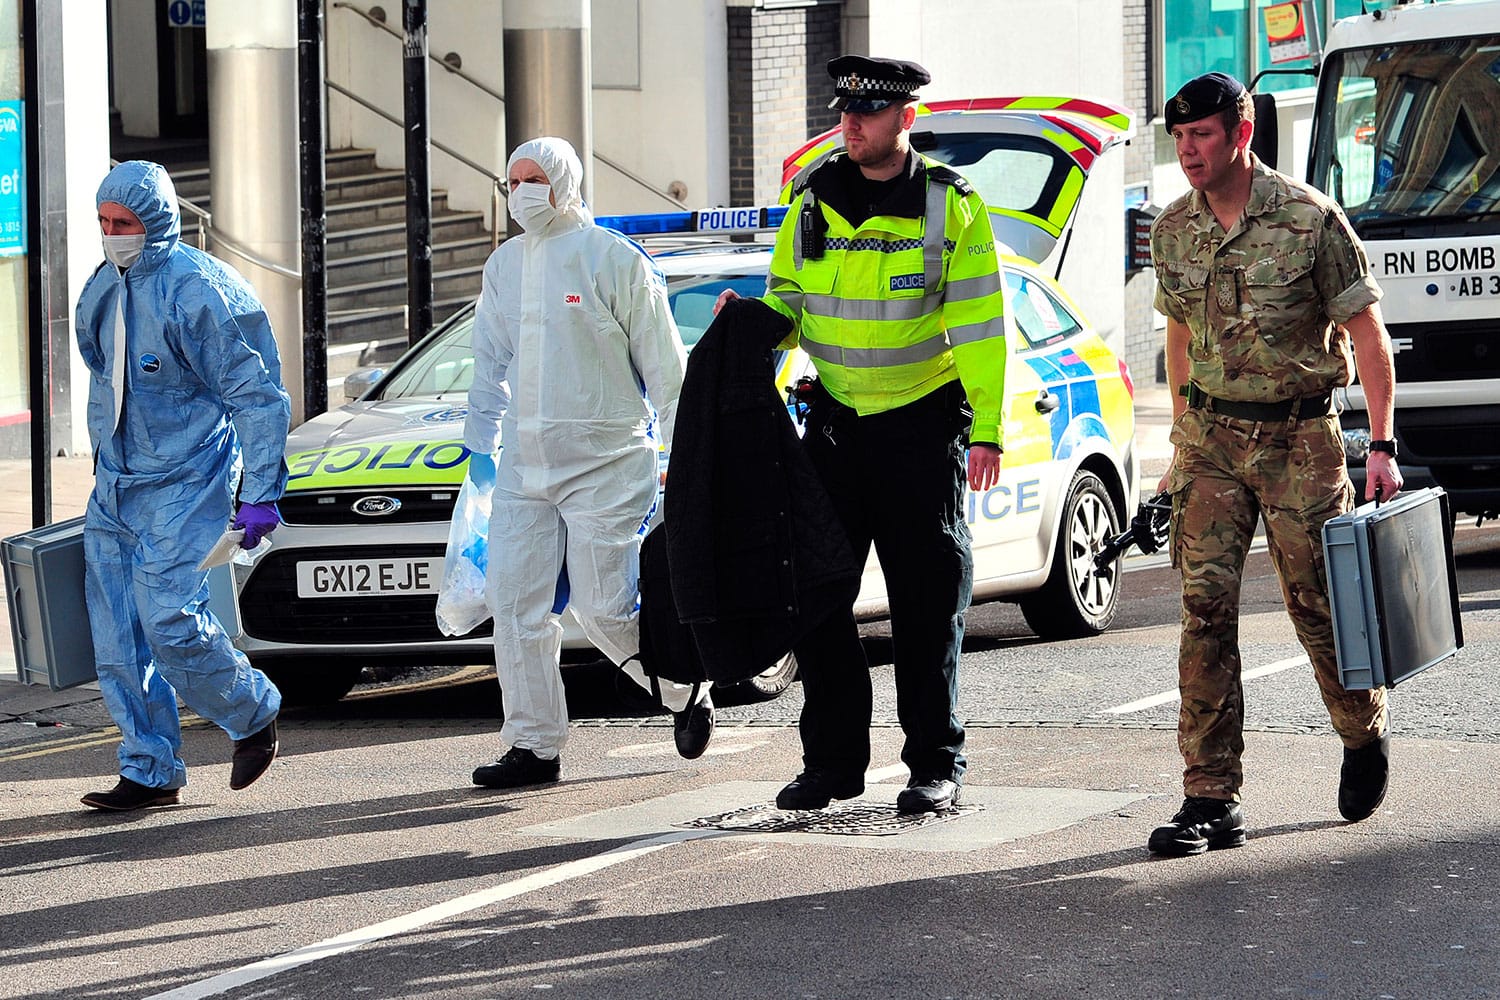 7 pequeños artefactos explosivos han sido enviados a centros de reclutamiento del Ejército británico